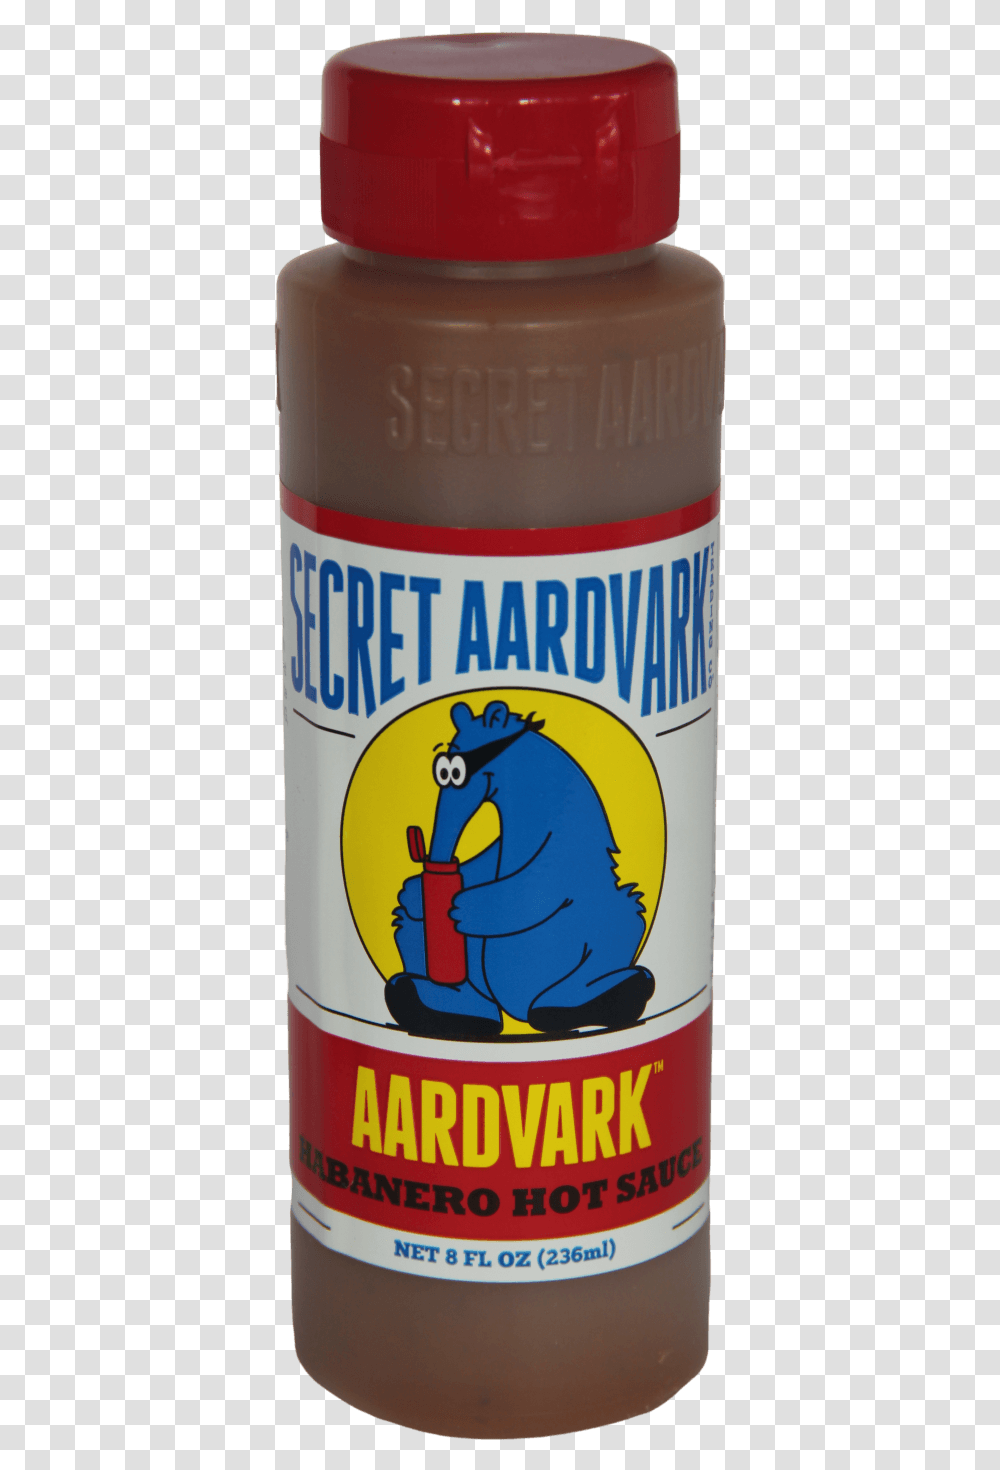 Secret Aardvark Habanero Hot Sauce 236ml Stallion, Tin, Can, Beer, Alcohol Transparent Png